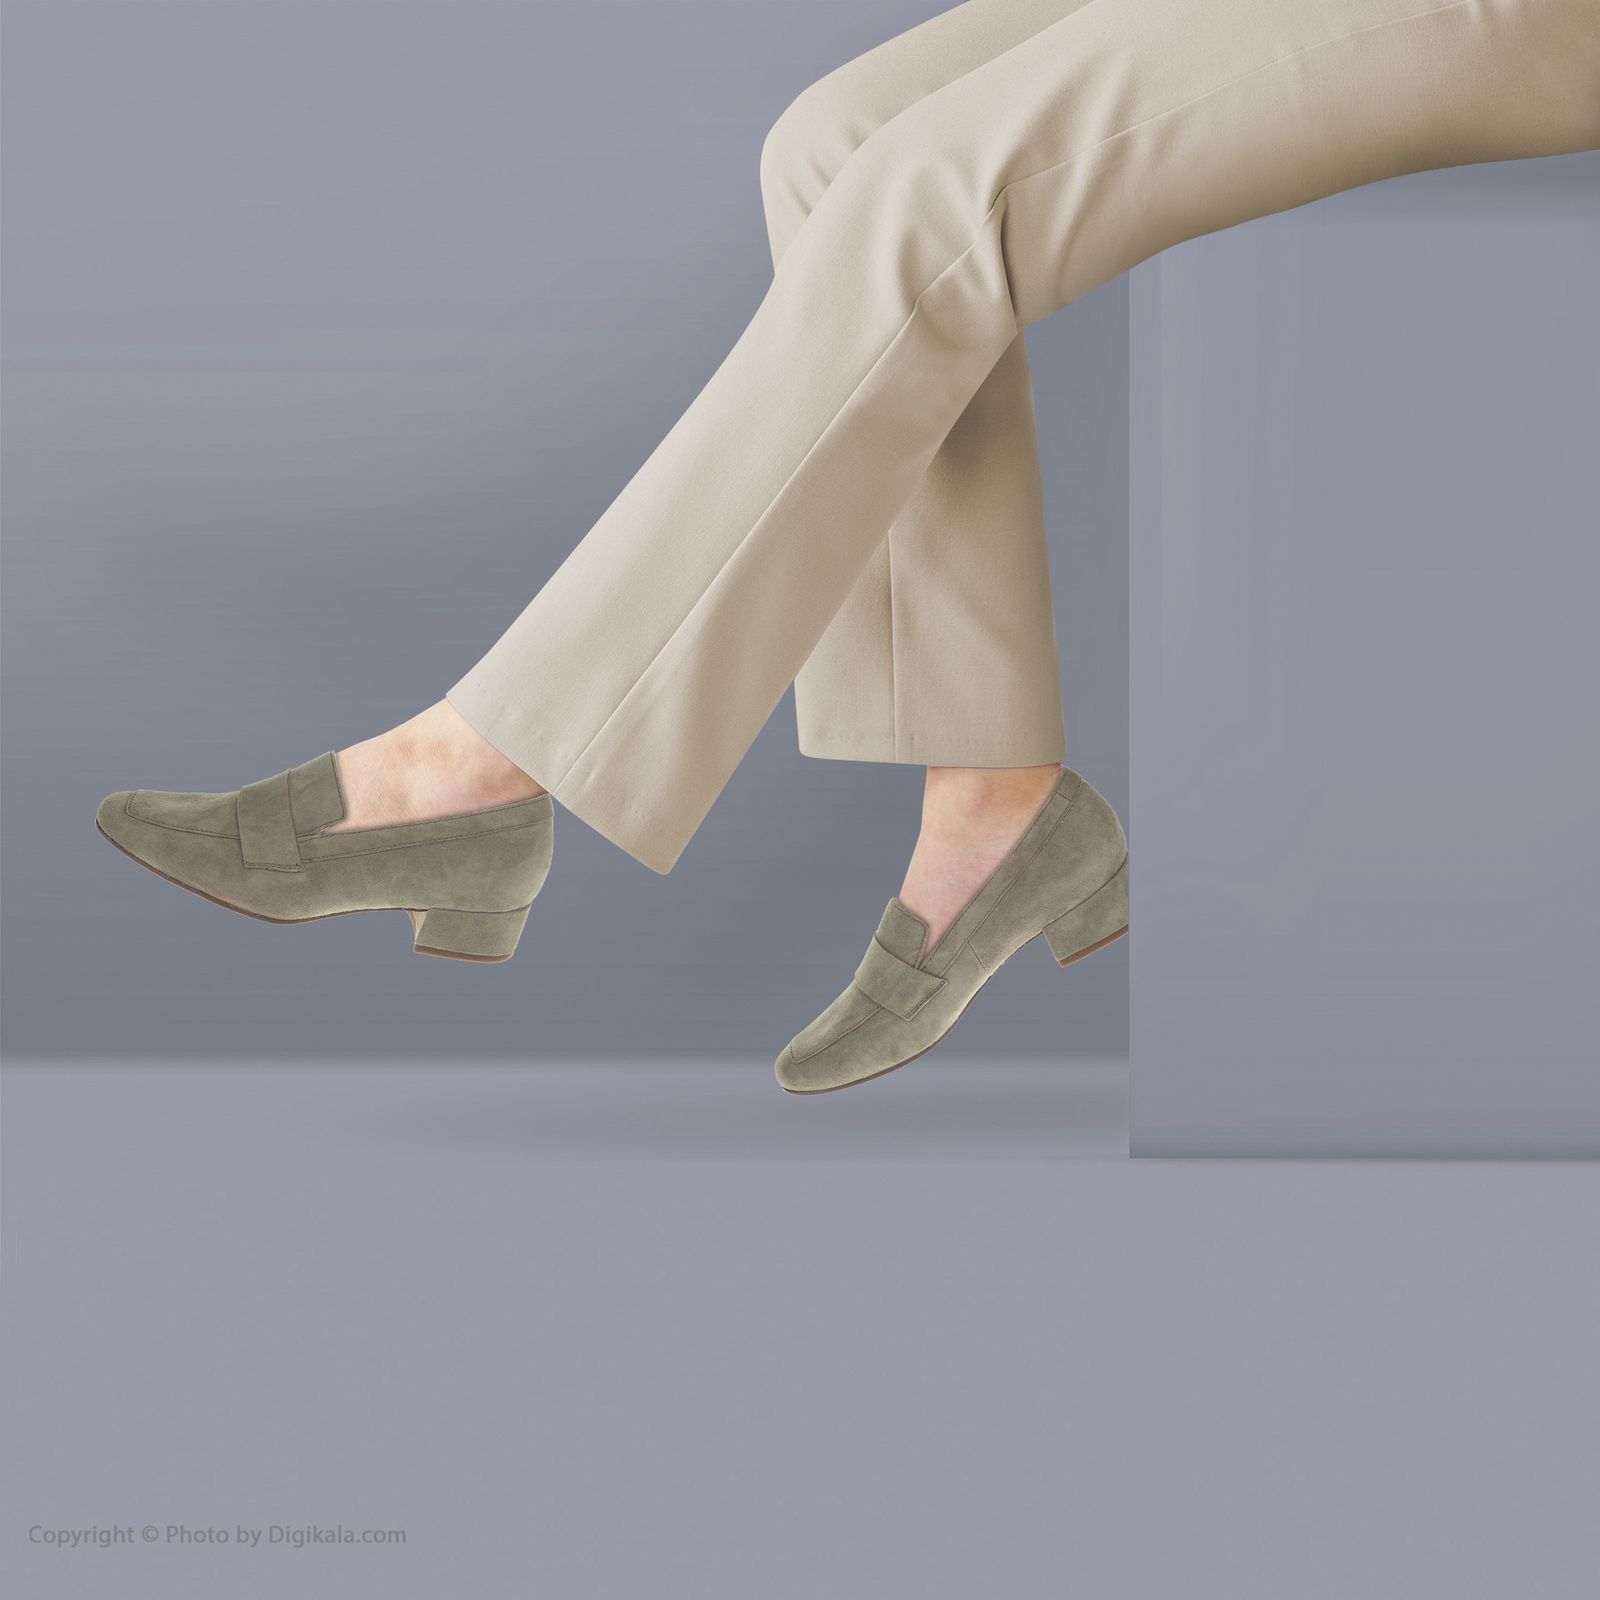 کفش روزمره زنانه هوگل مدل 5-103512-5800 - زیتونی - 2